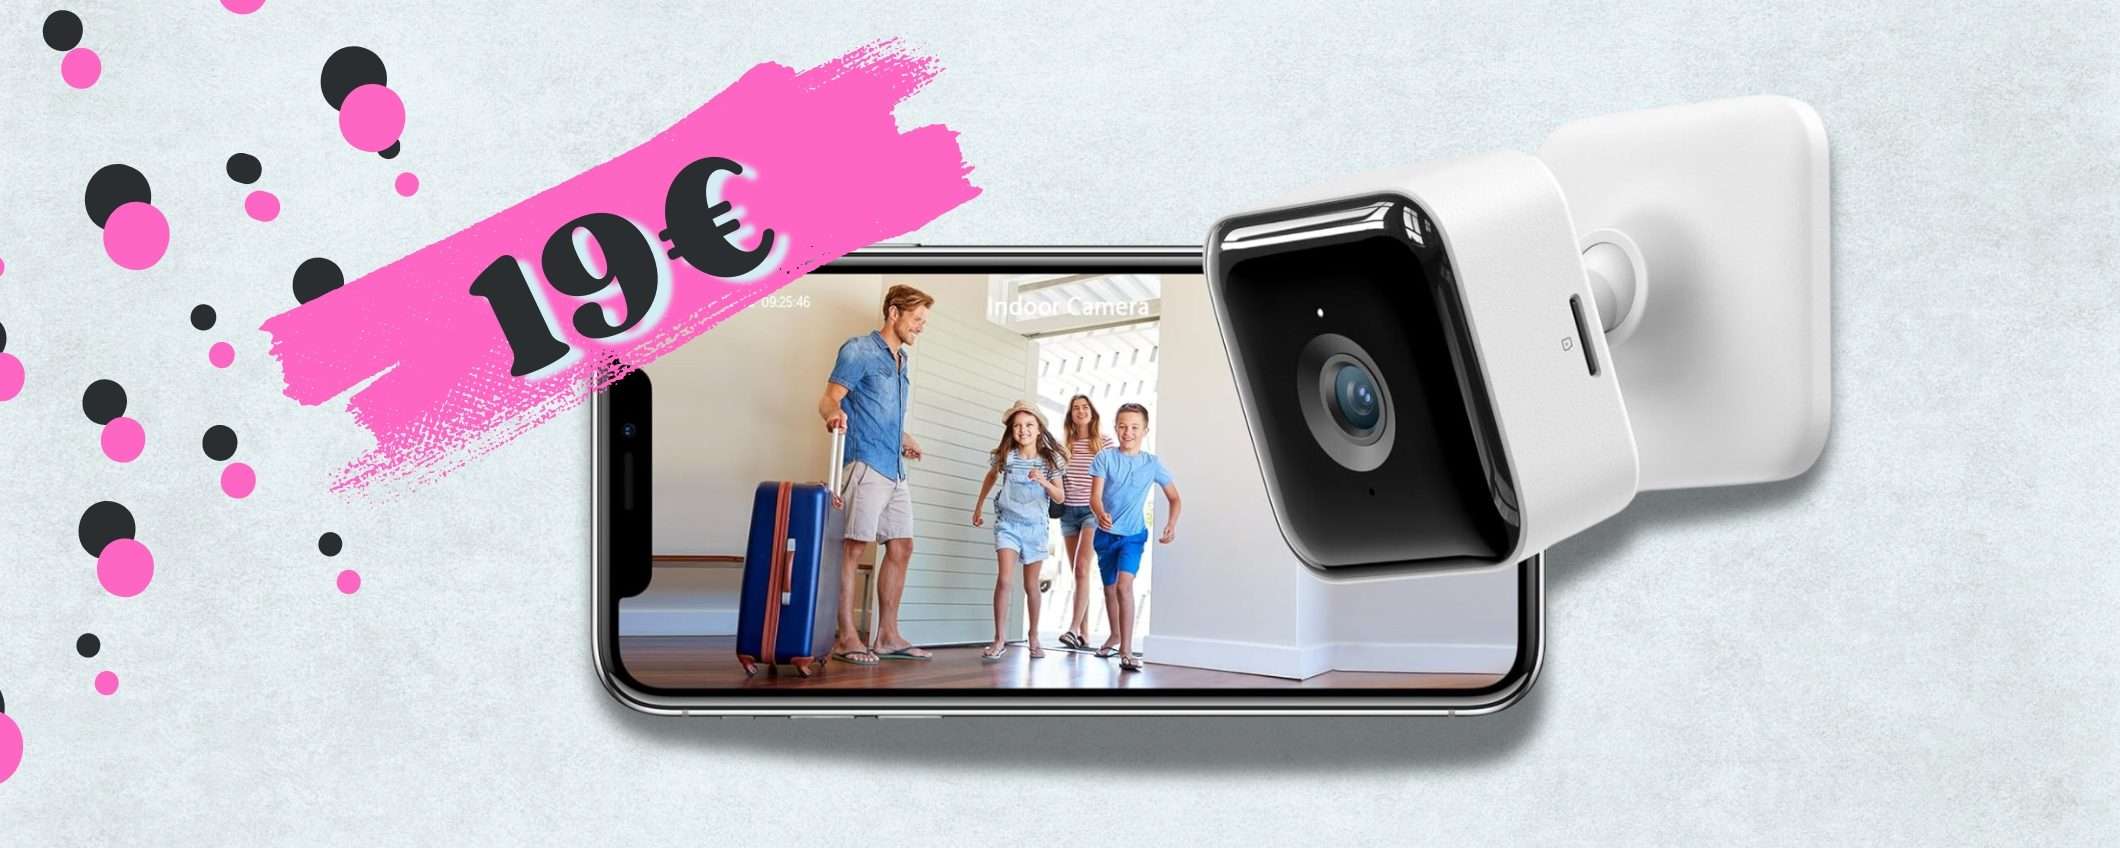 19€ per mettere in SICUREZZA la tua casa: telecamera WiFi MINI